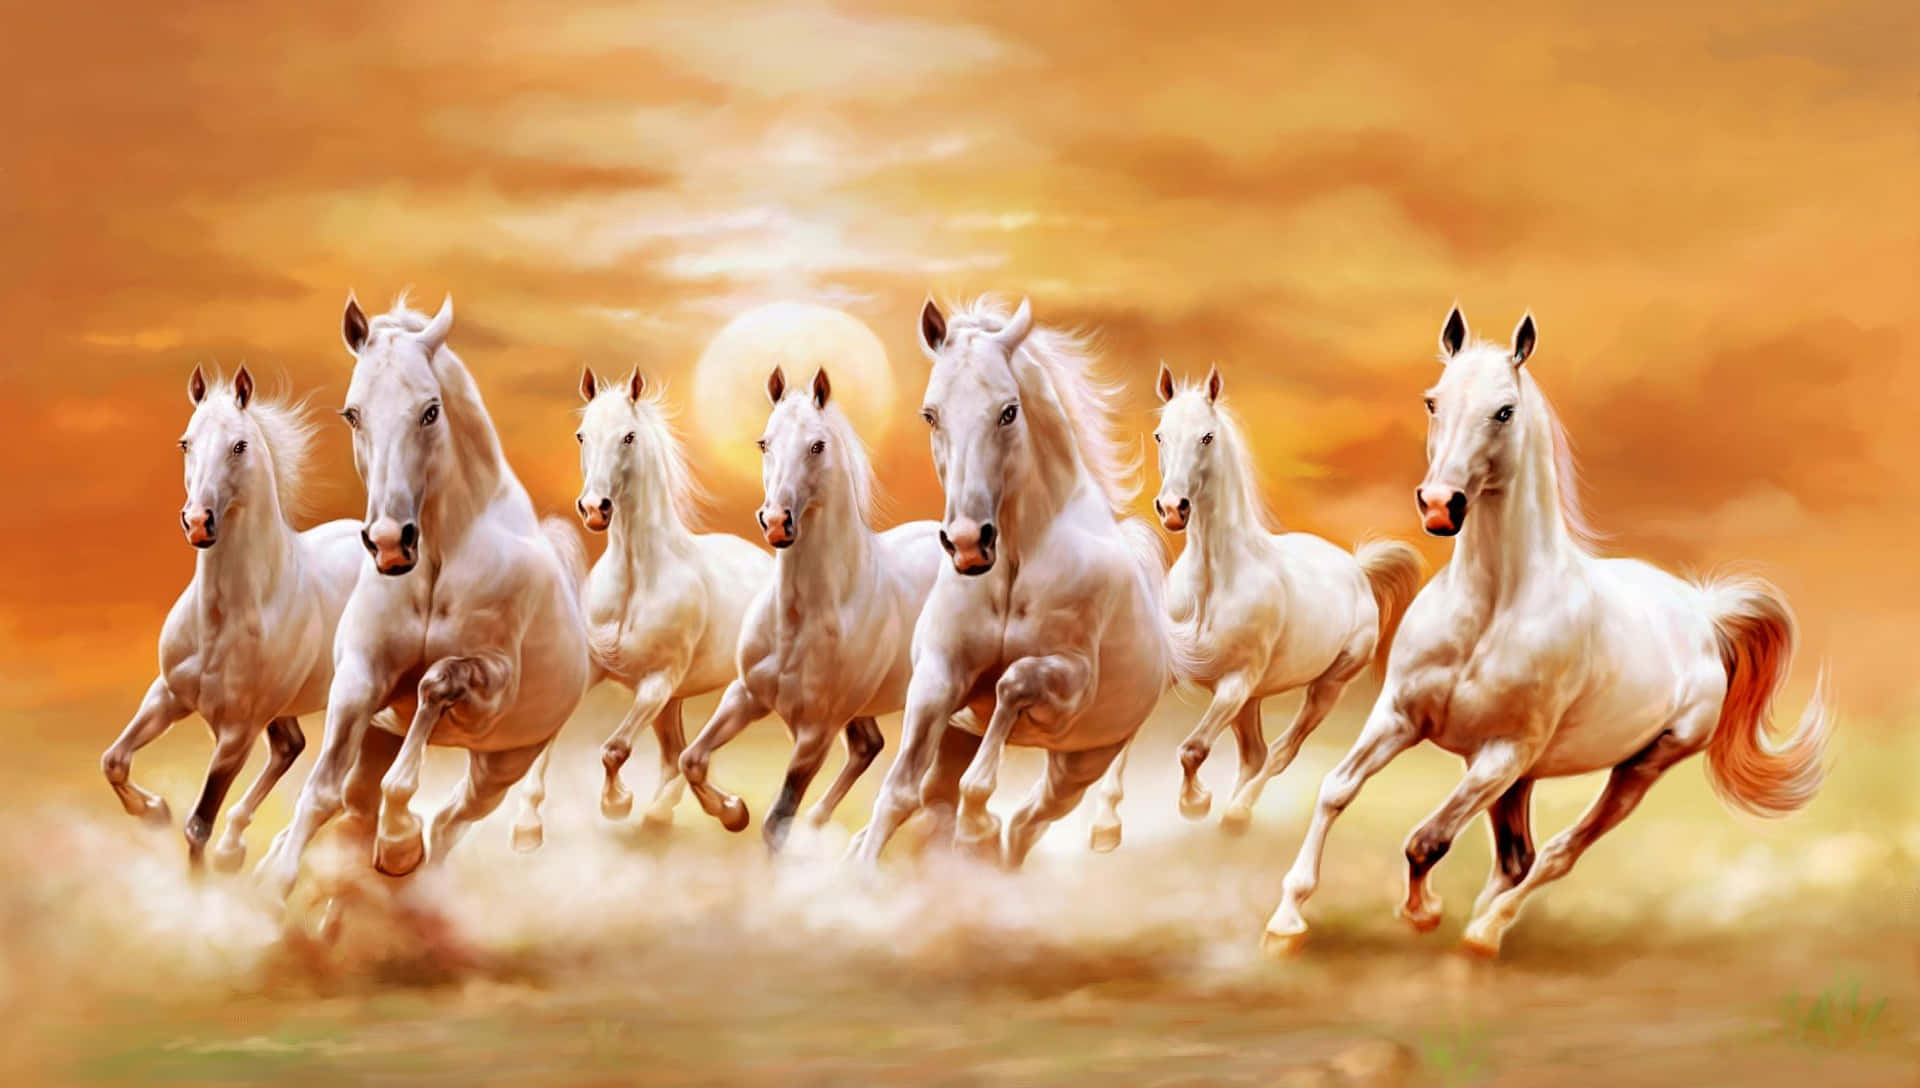 7 White Horses Running Against Sunset Background